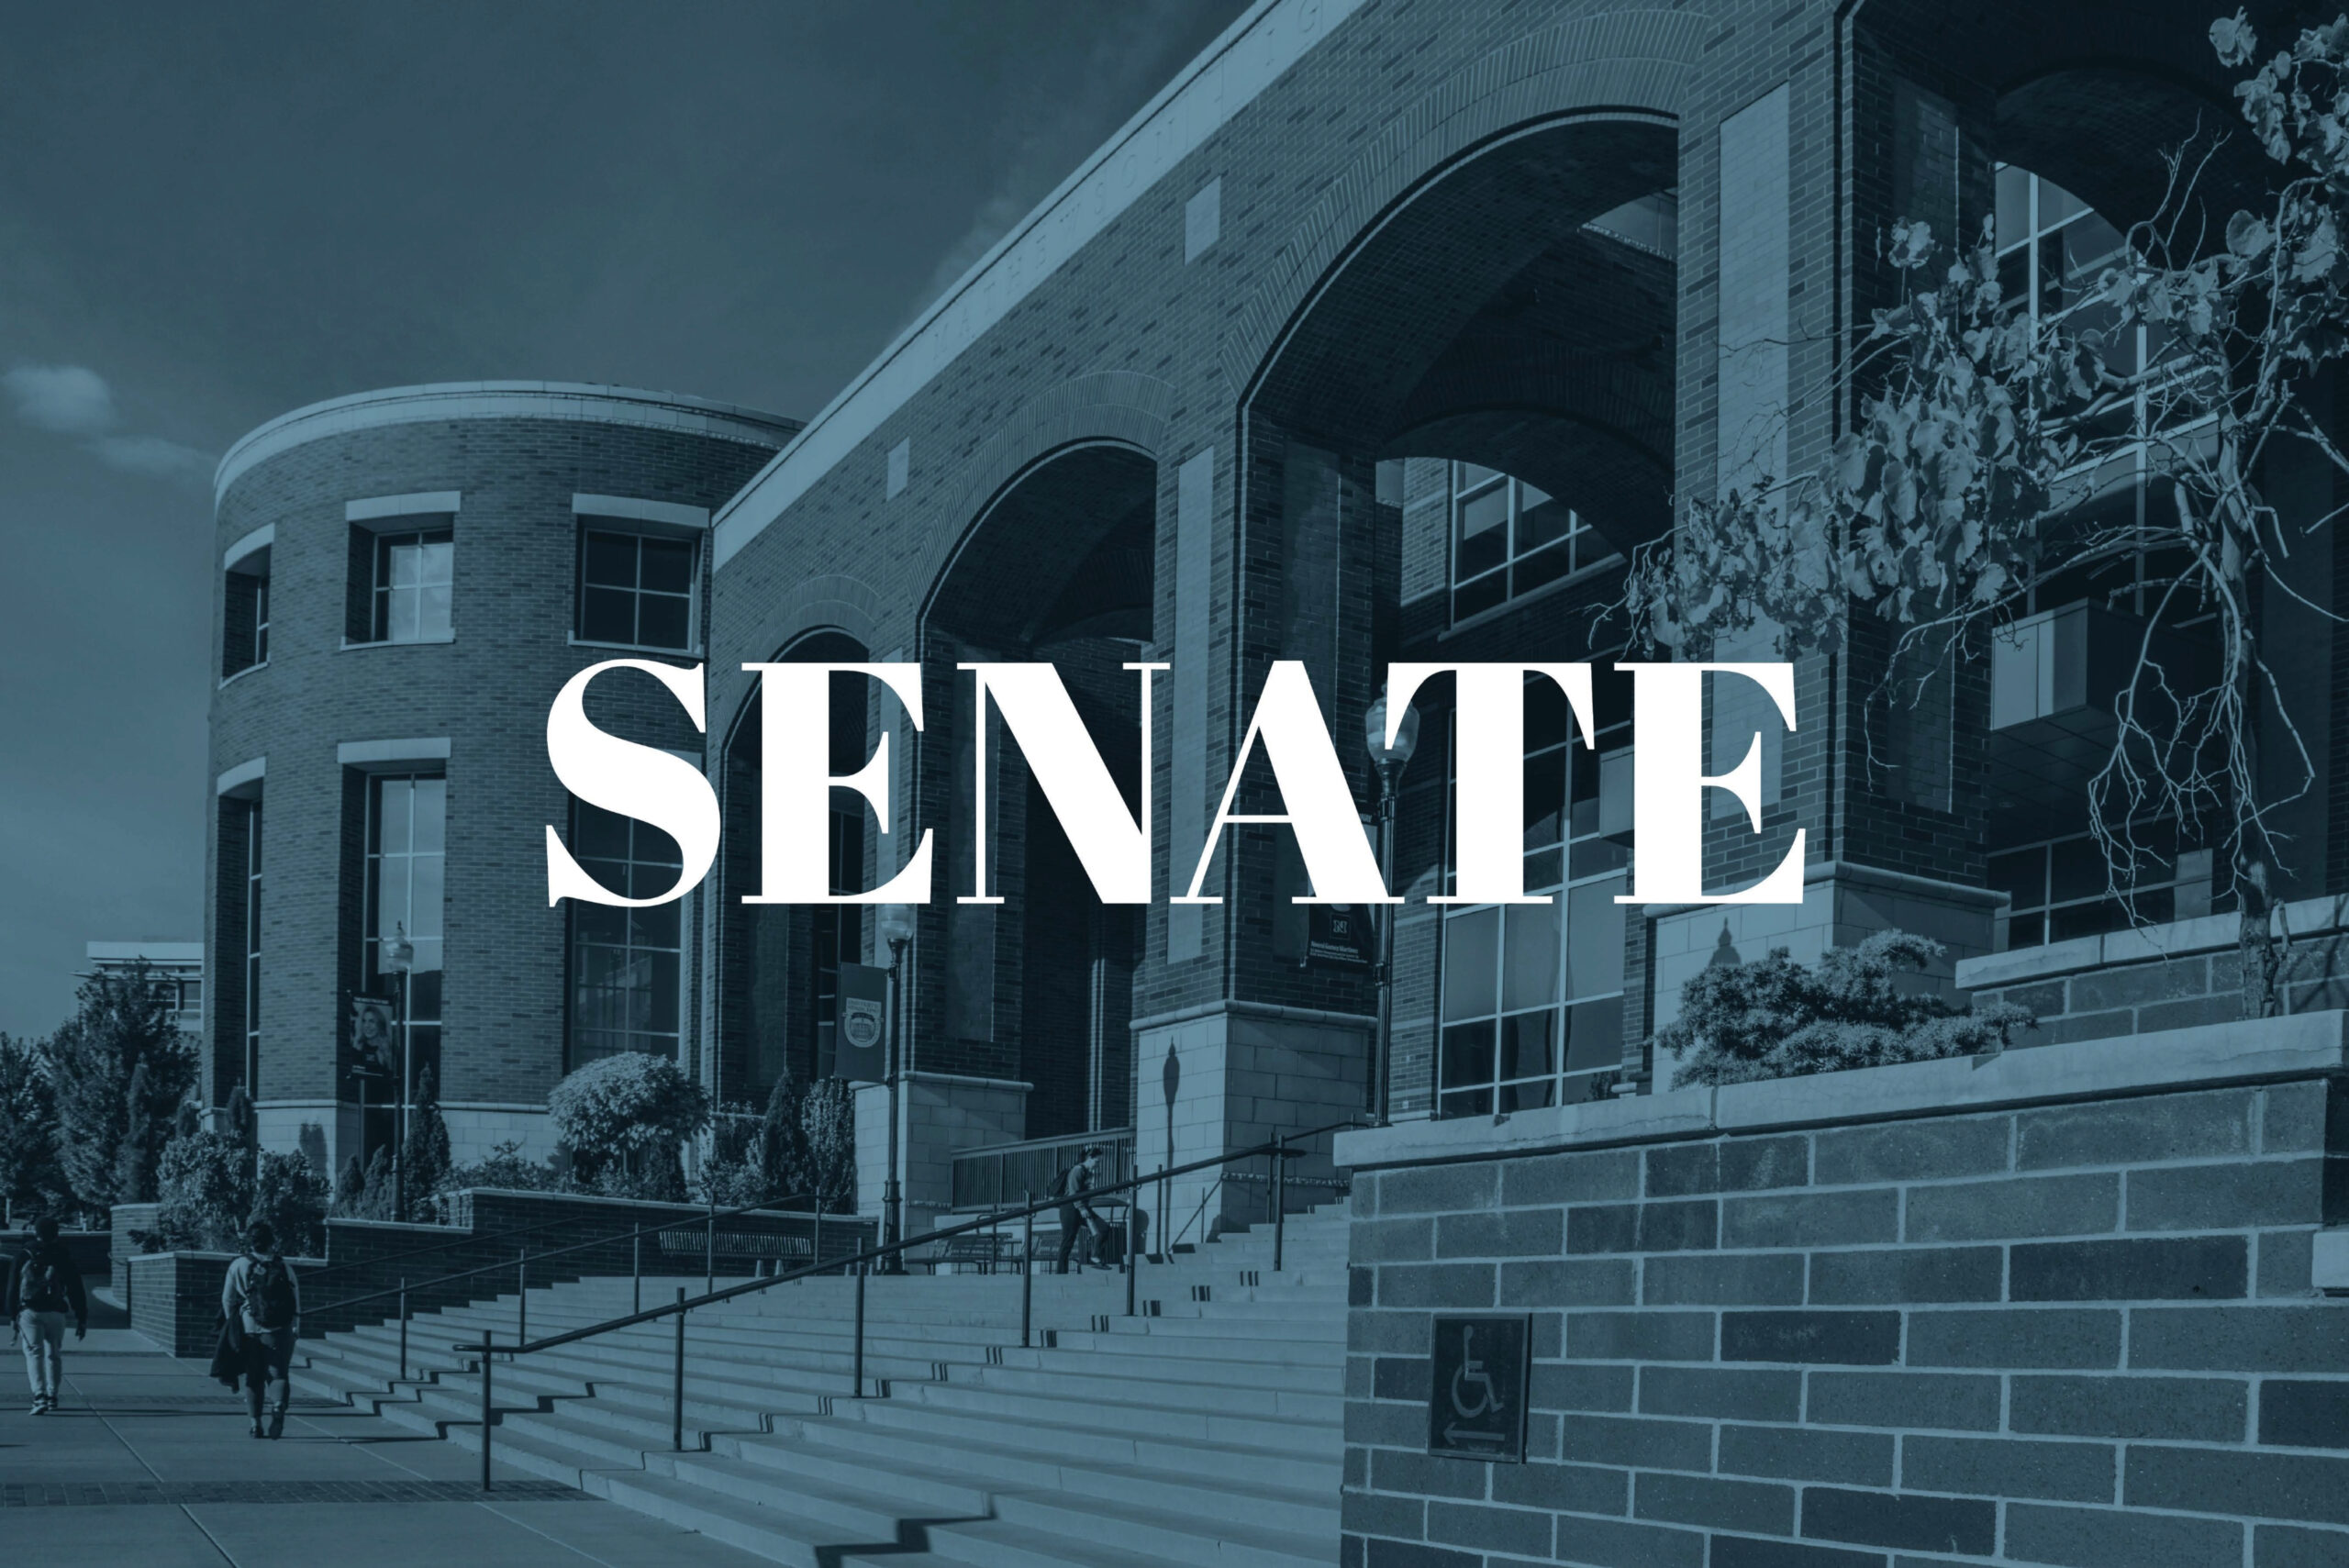 SENADO 12/6: Respuesta del Senado al Tiroteo en UNLV, Renuncias de Senadores y Aprobación de Proyecto de Ley Electoral